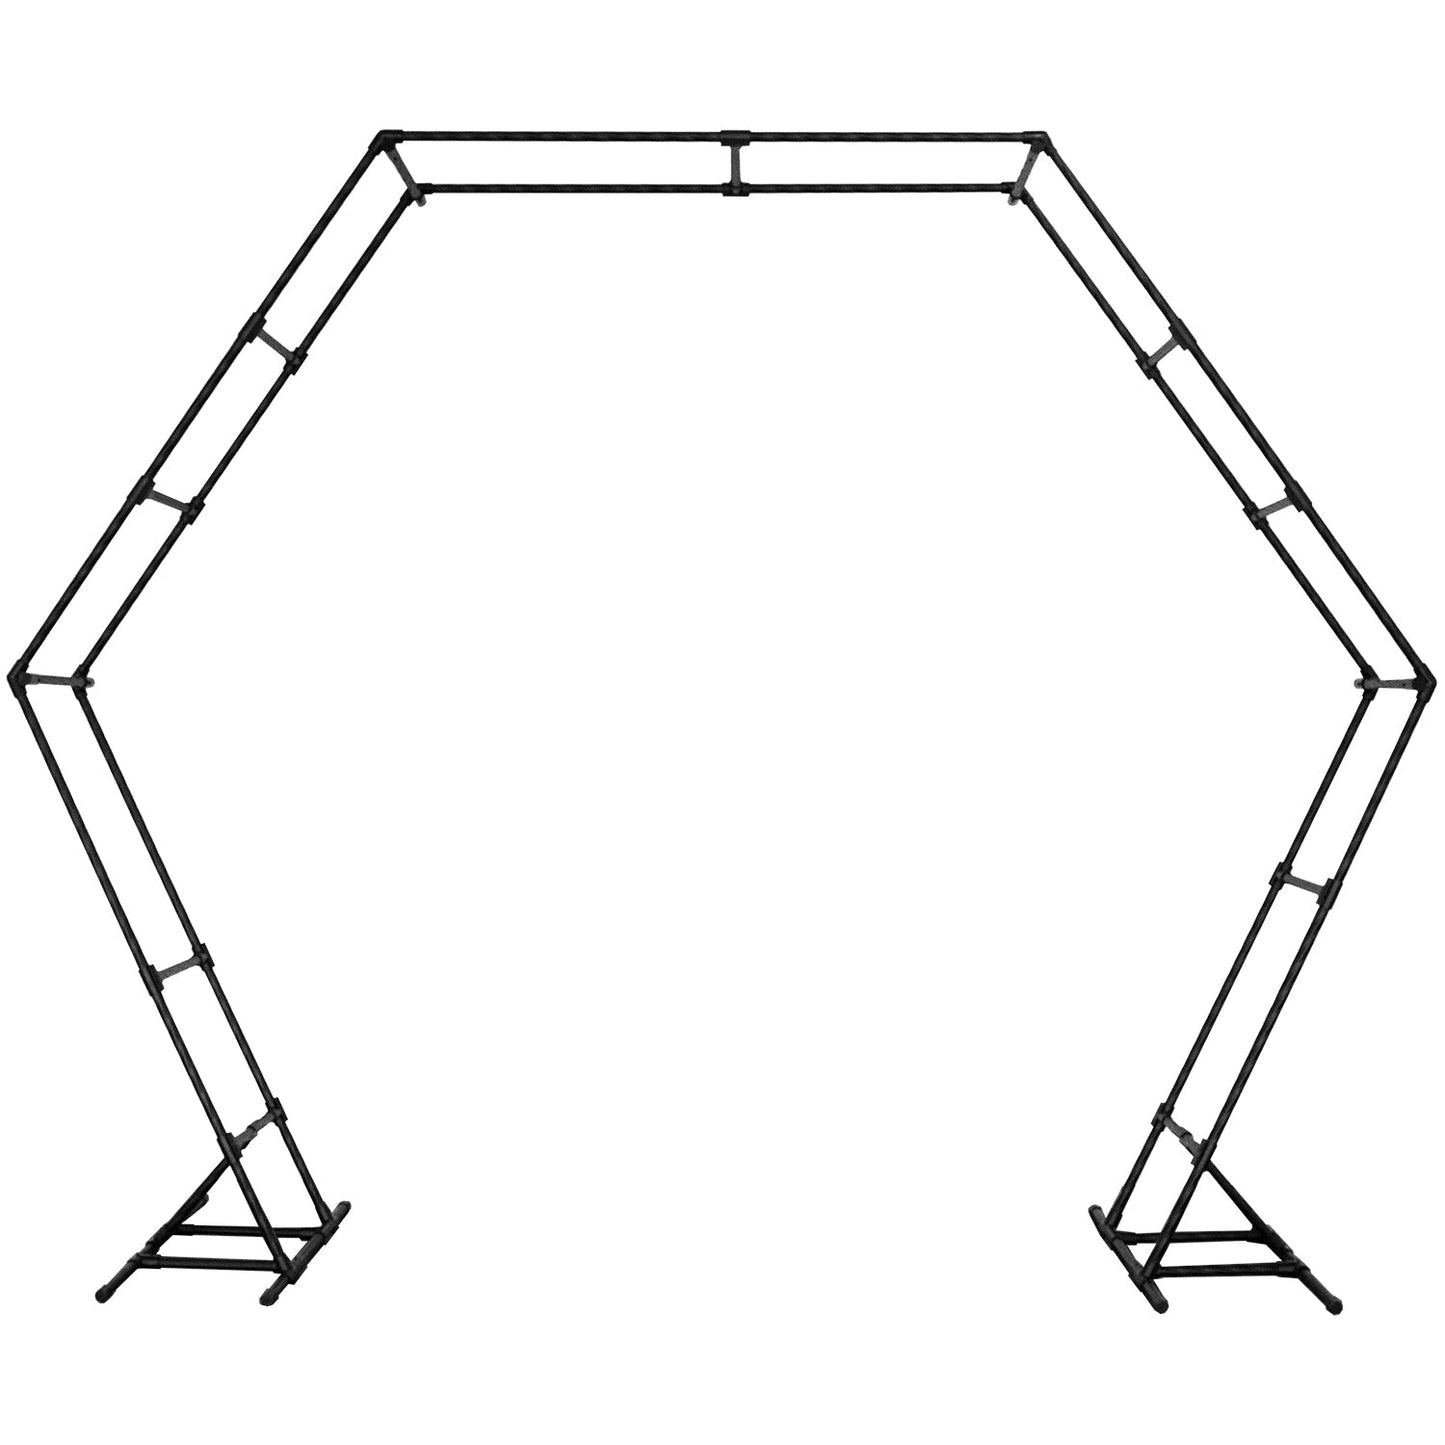 A sturdy Hexagon wedding arch frame